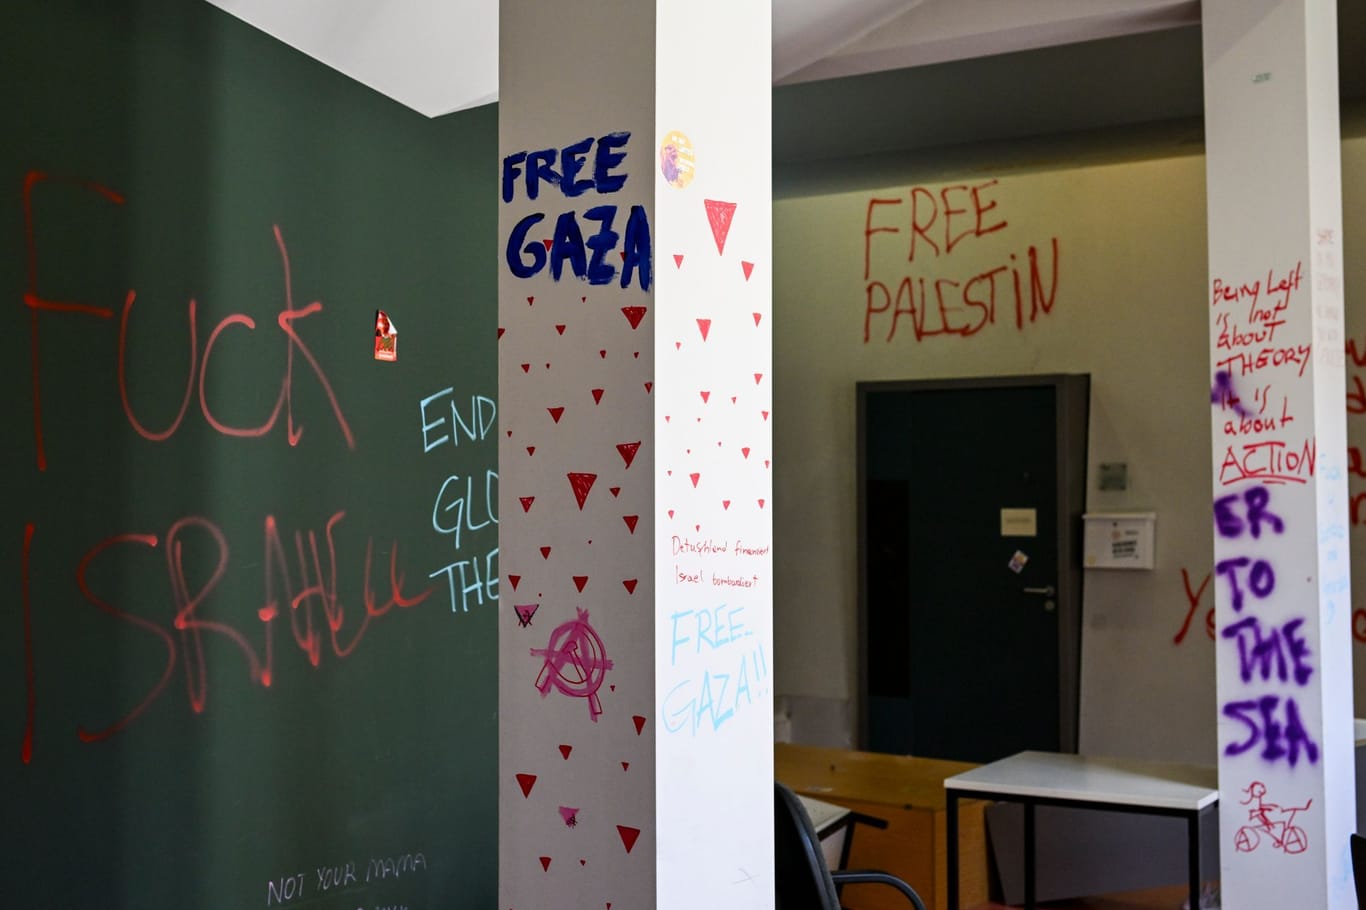 29.05.2024, Berlin: Bei einem Pressetermin der Humboldt-Universität zu Berlin werden Schäden und Schmierereien nach einer Besetzung gezeigt. Propalästinensische Aktivisten hatten am 22.5. die Räume der Universität aus Protest gegen Israel und zur Unterstützung der Palästinenser besetzt.